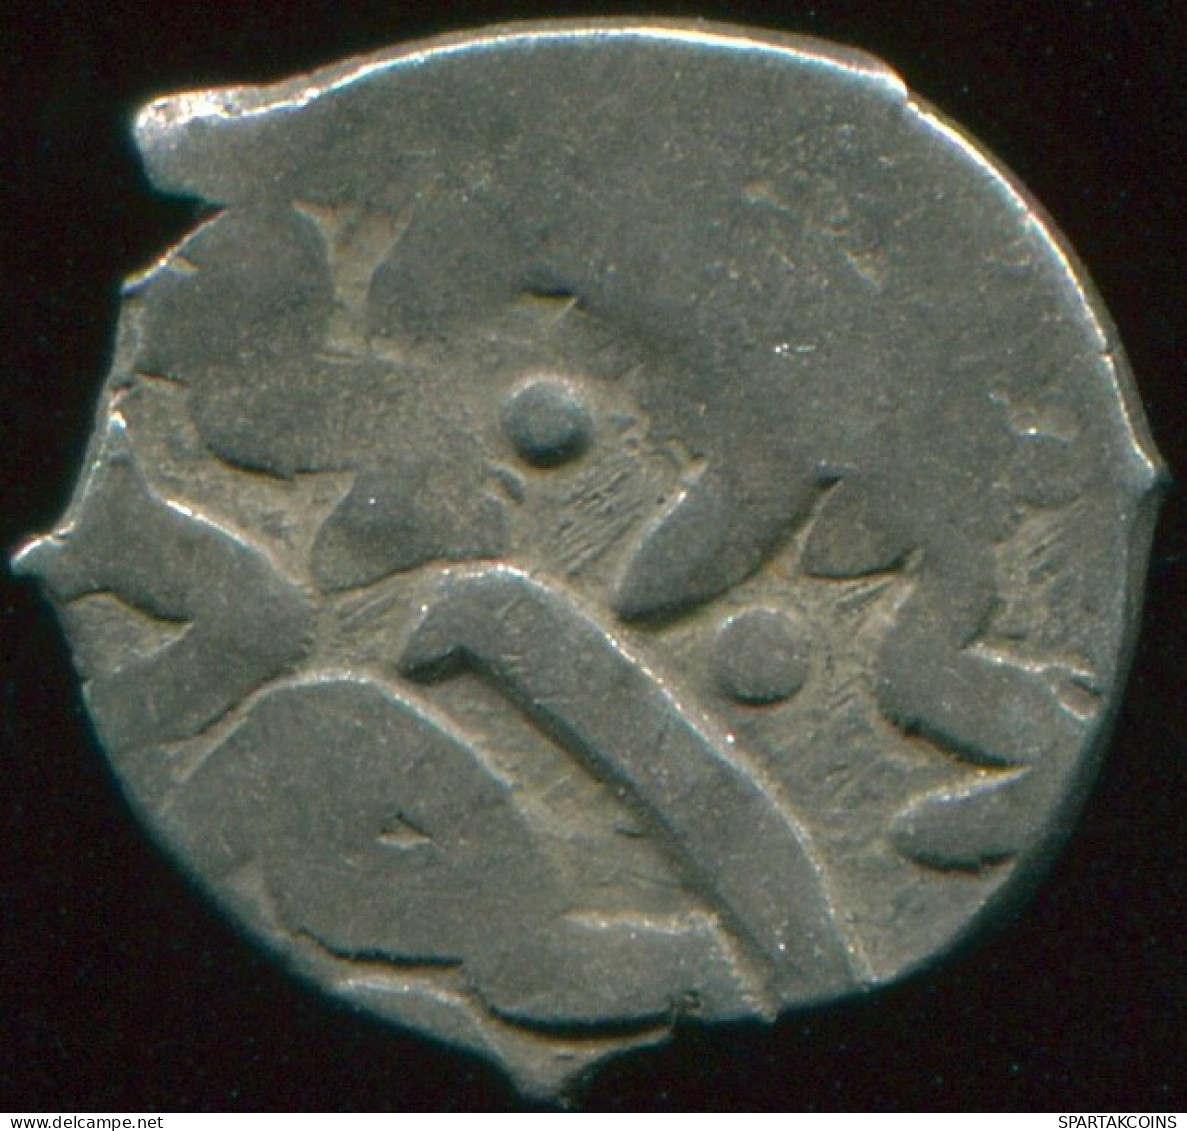 OTTOMAN EMPIRE Silver Akce Akche 0.4g/9.36mm Islamic Coin #MED10153.3.F.A - Islamiche